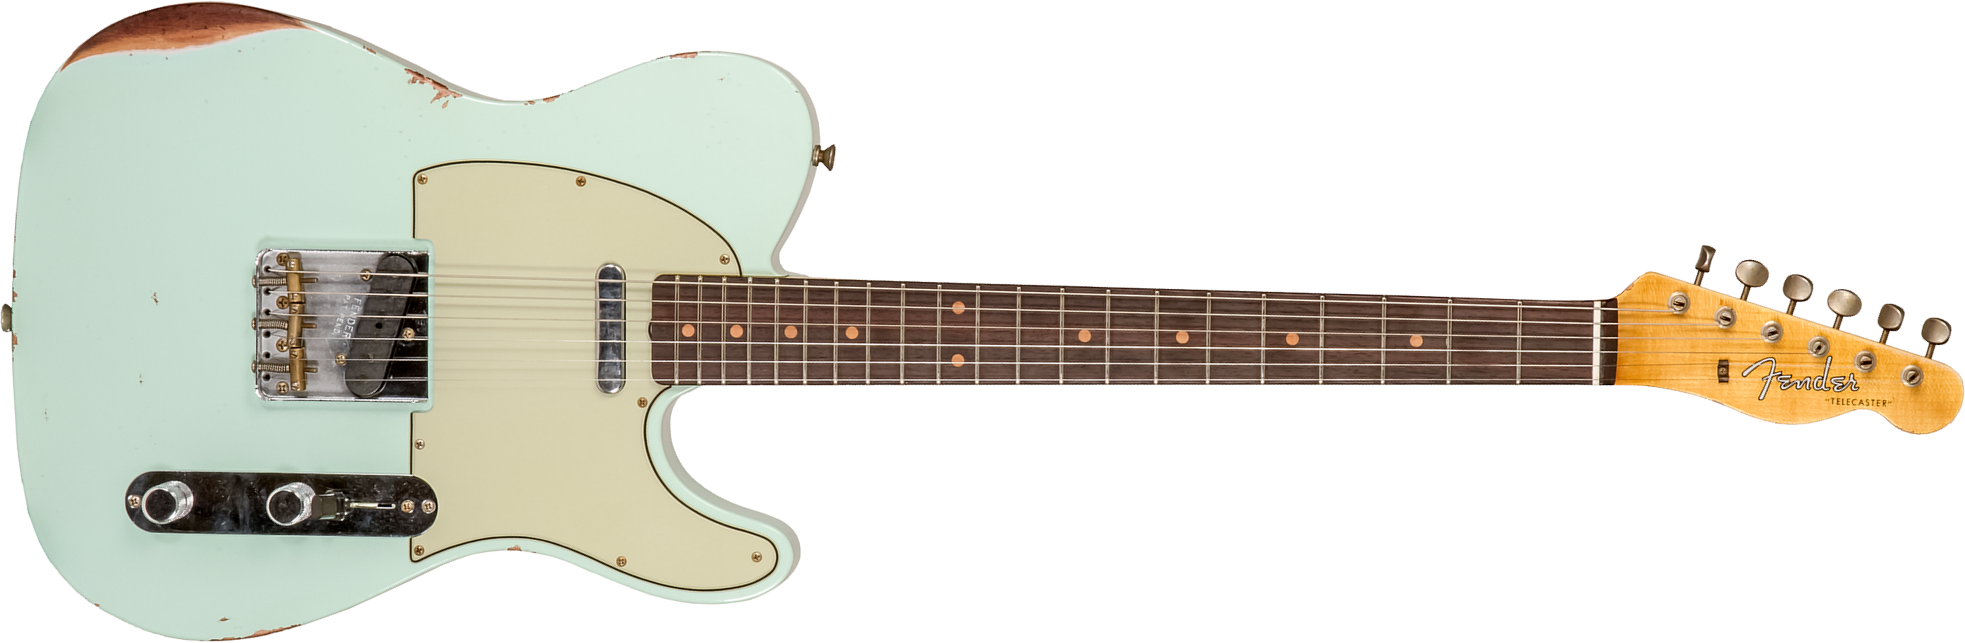 Fender Custom Shop Tele 1961 2s Ht Rw #cz576010 - Relic Aged Surf Green - Guitare Électrique Forme Tel - Main picture